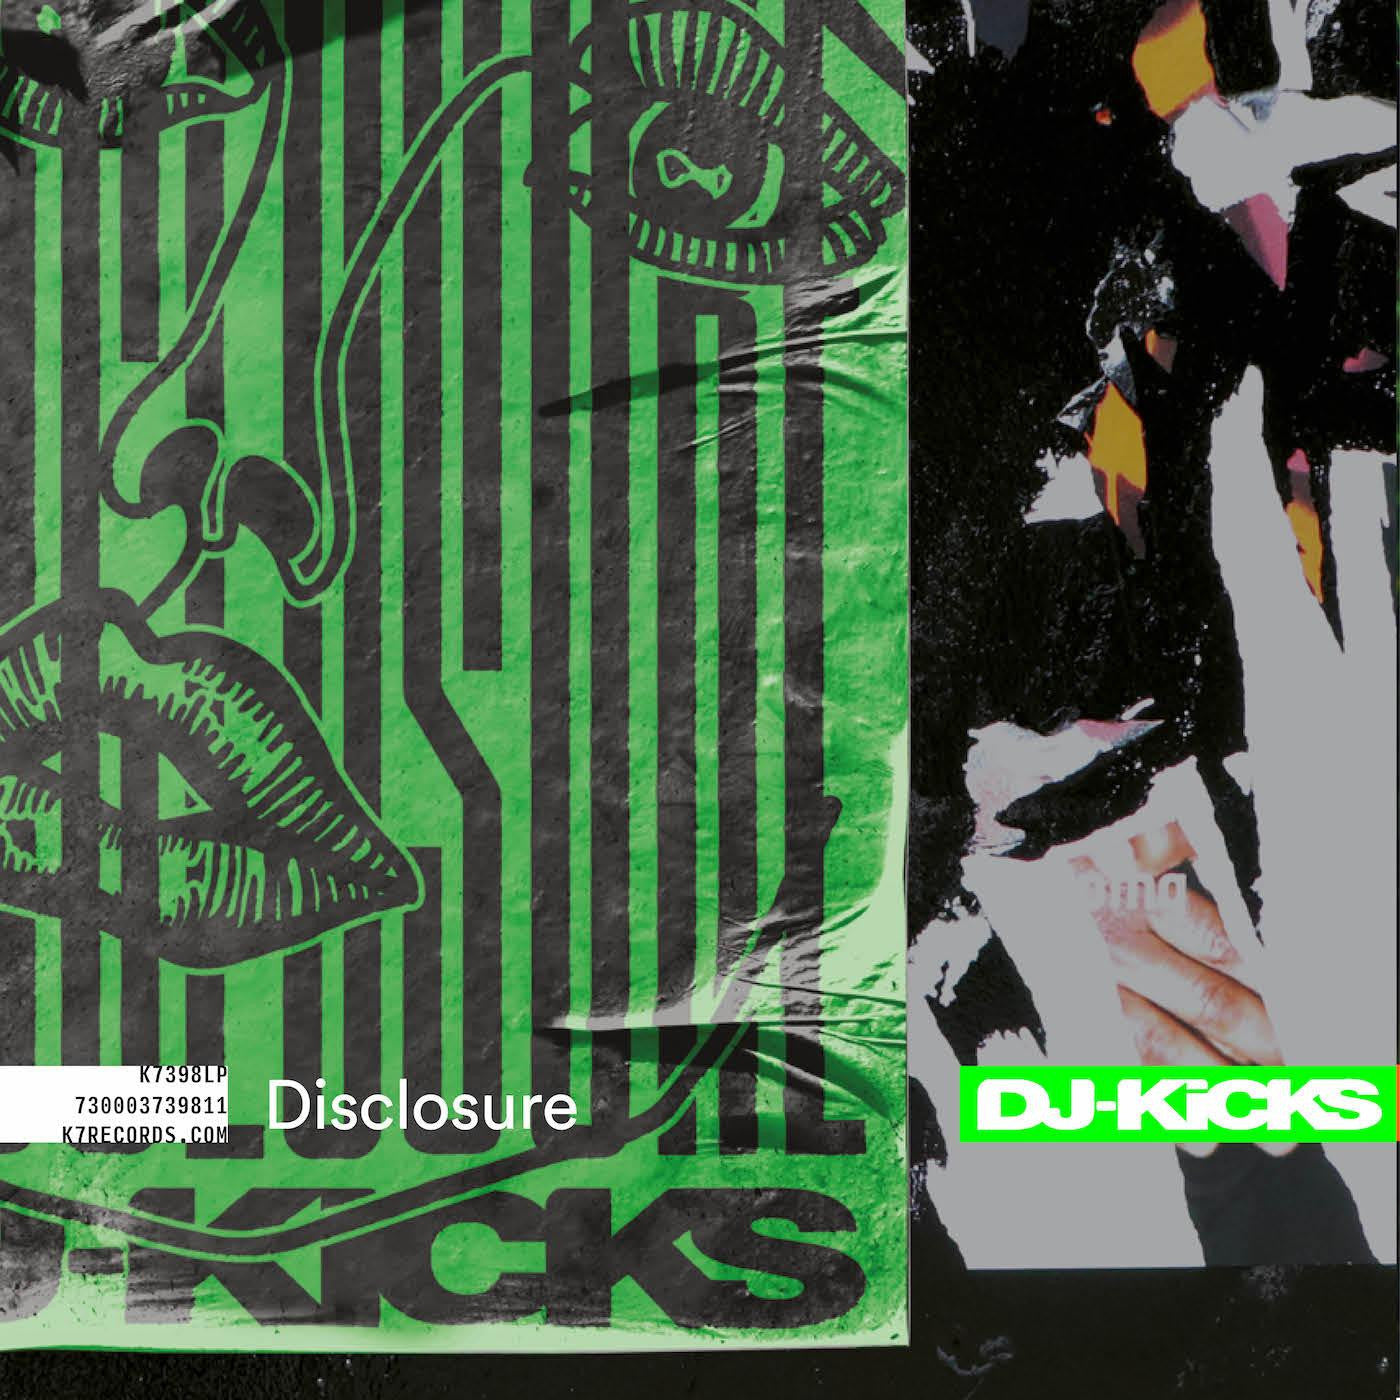 DISCLOSURE - DISCLOSURE: DJ KICKS Vinyl LP